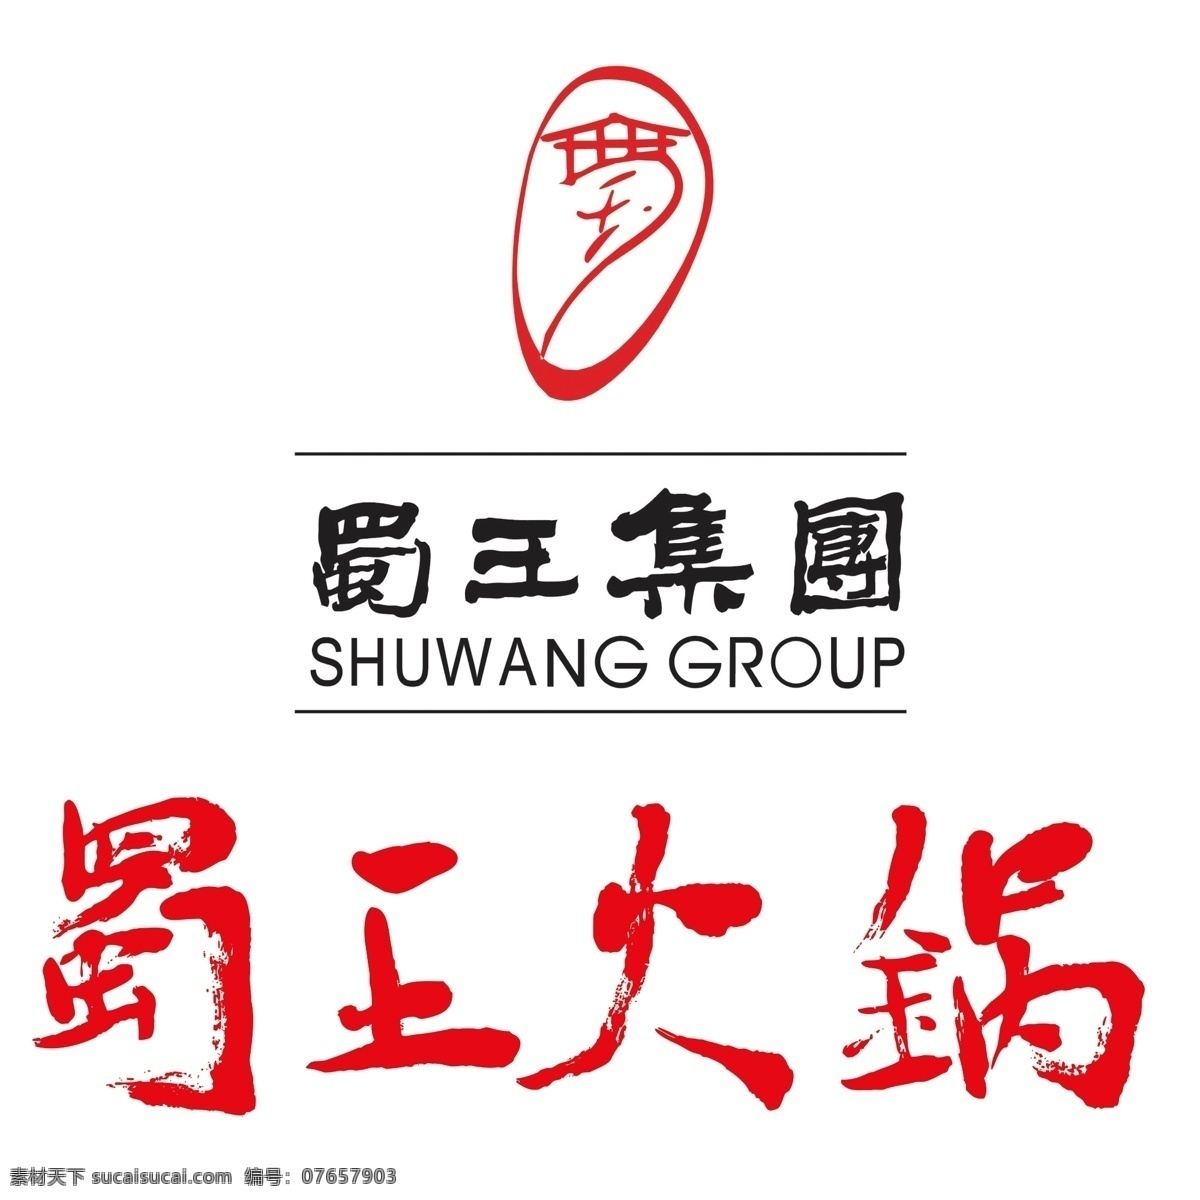 蜀王 火锅 logo 标志 源文件 蜀王标志 蜀王集团 蜀王ps 标志设计 广告设计模板